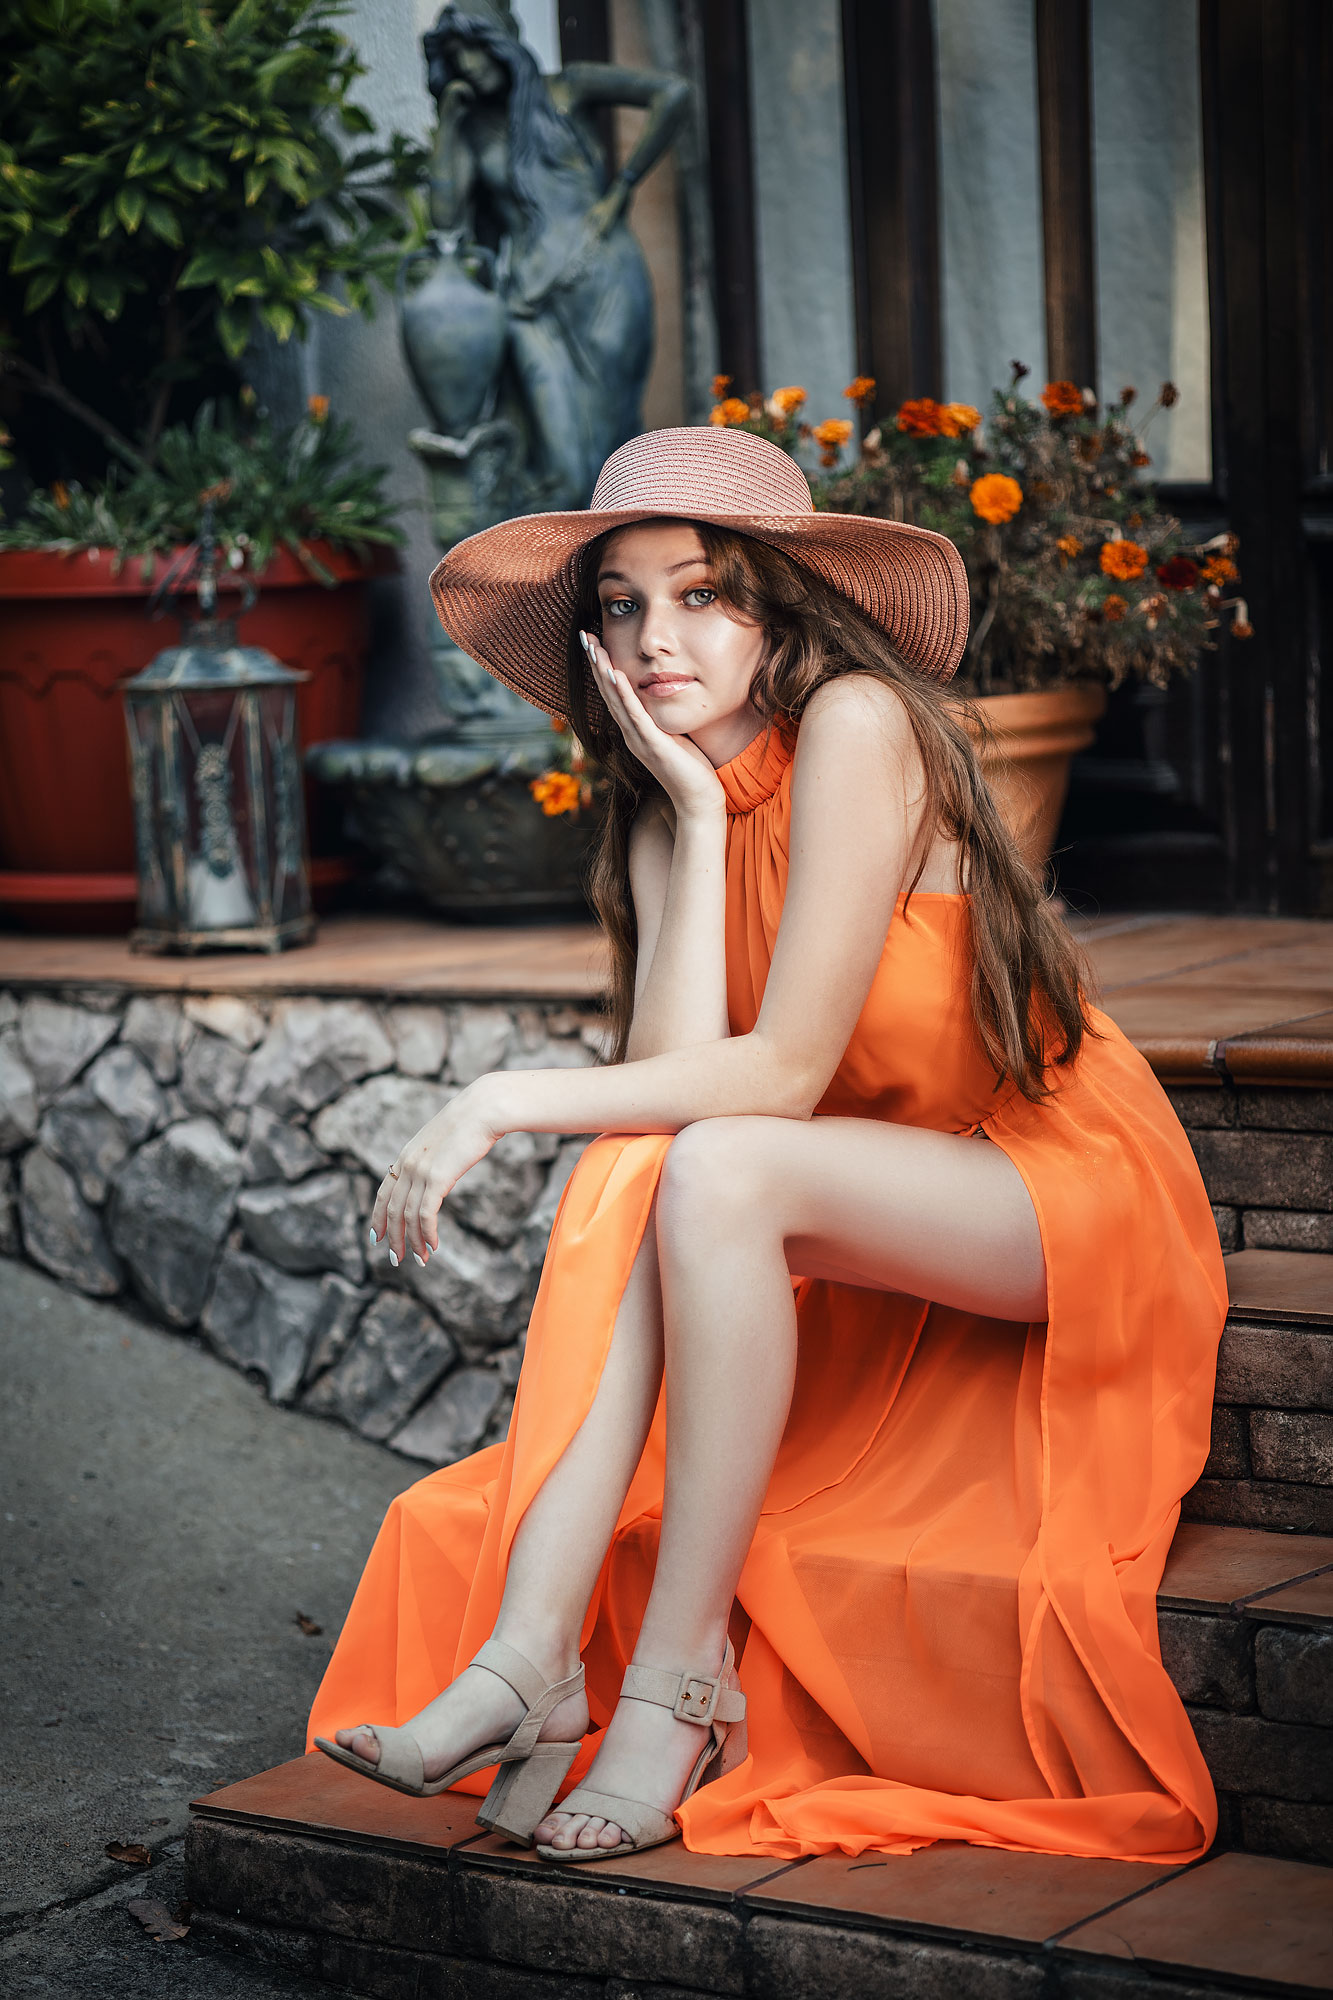 Irina Mukhina Women Brunette Hat Legs Orange Clothing Dress Flowers Stairs 1333x2000